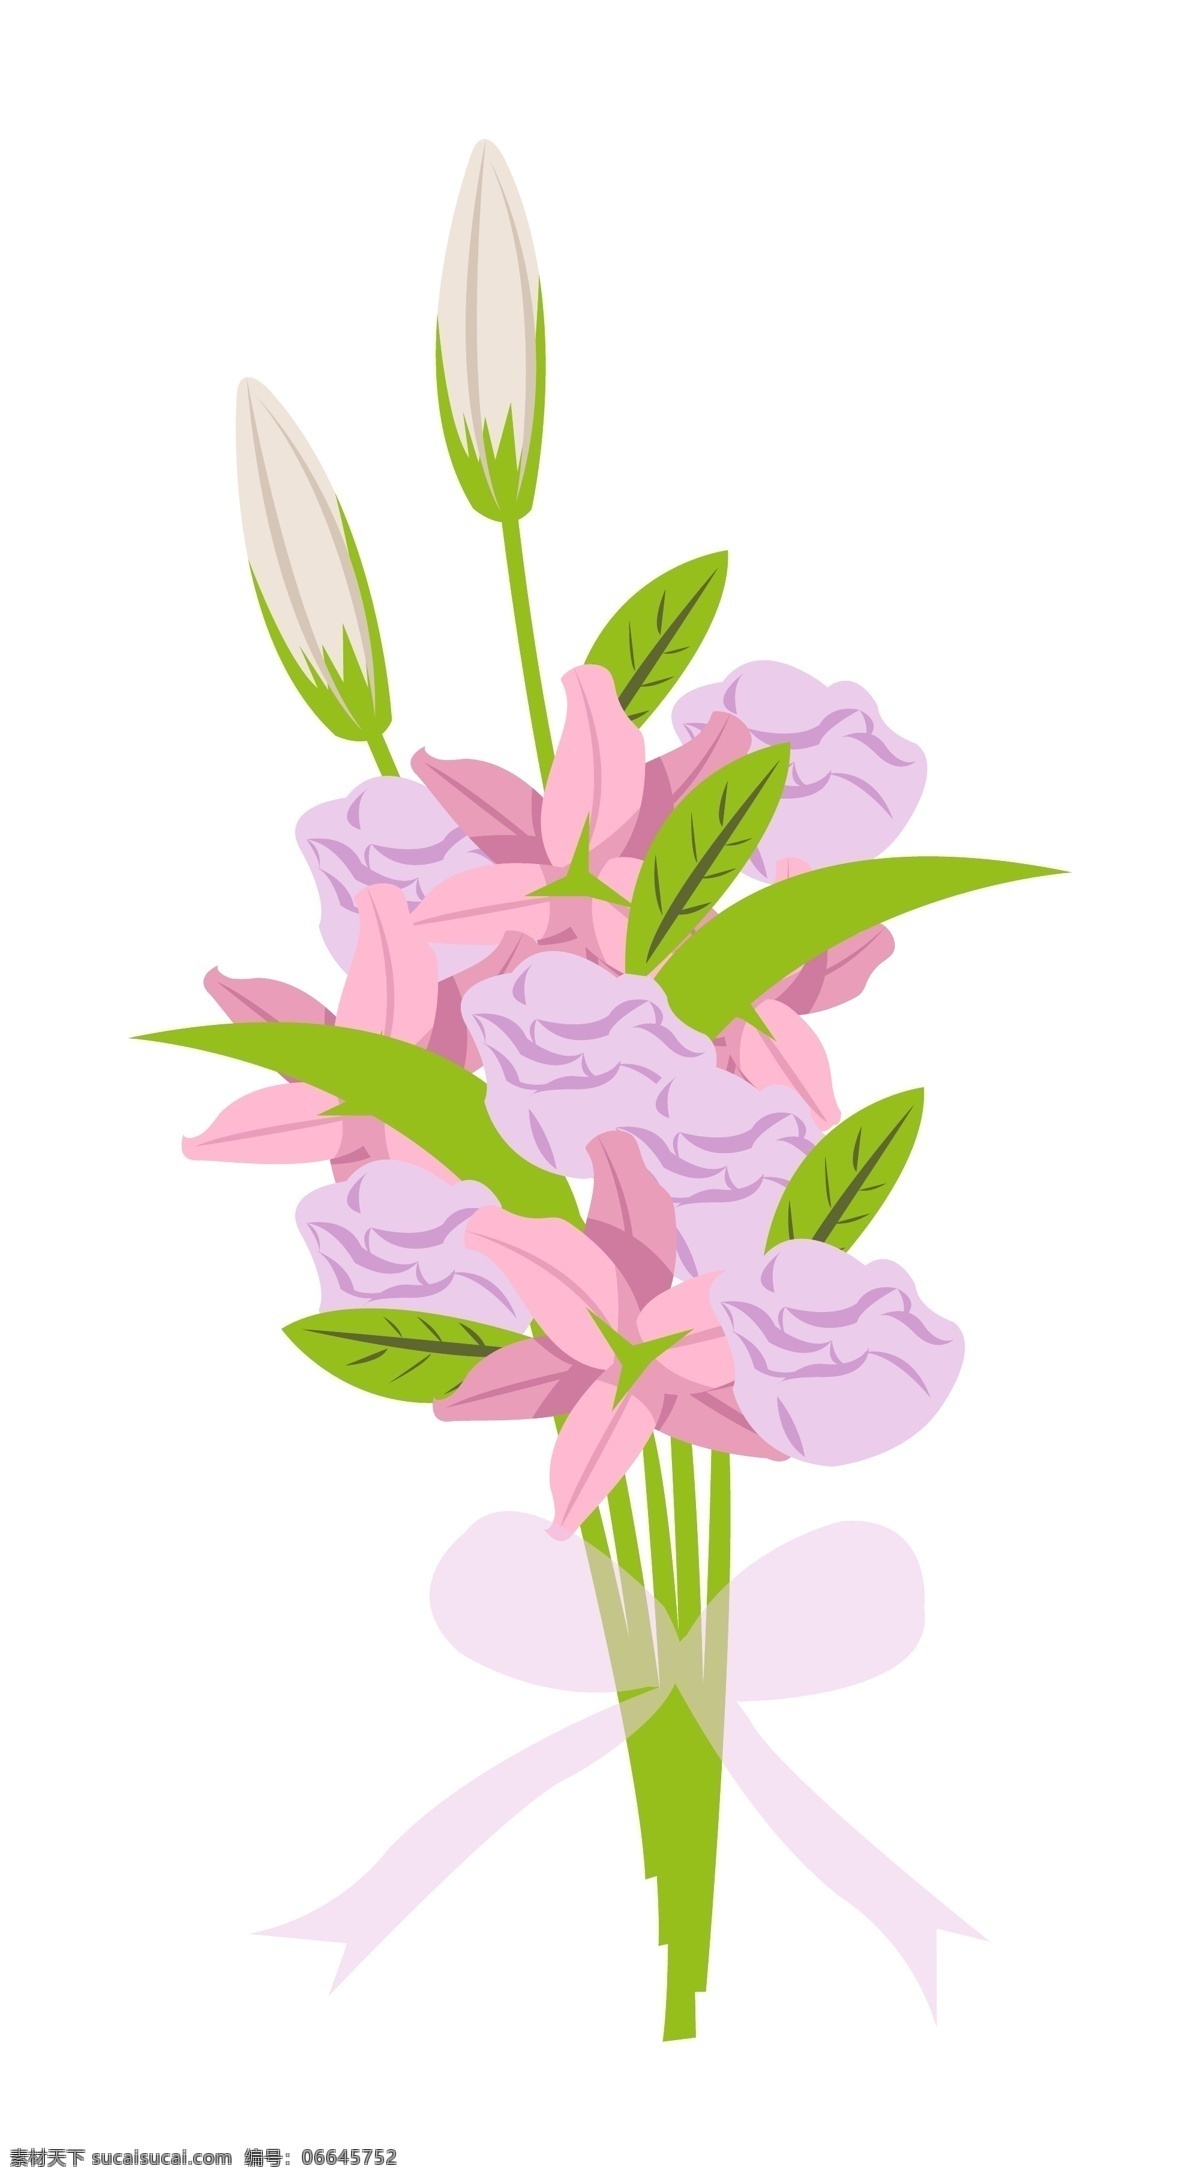 手绘 爱情 紫色 鲜花 插画 绿色叶子 花朵 卡通插画 手绘花束插画 紫色鲜花 粉色鲜花 漂亮的花束 手绘花束